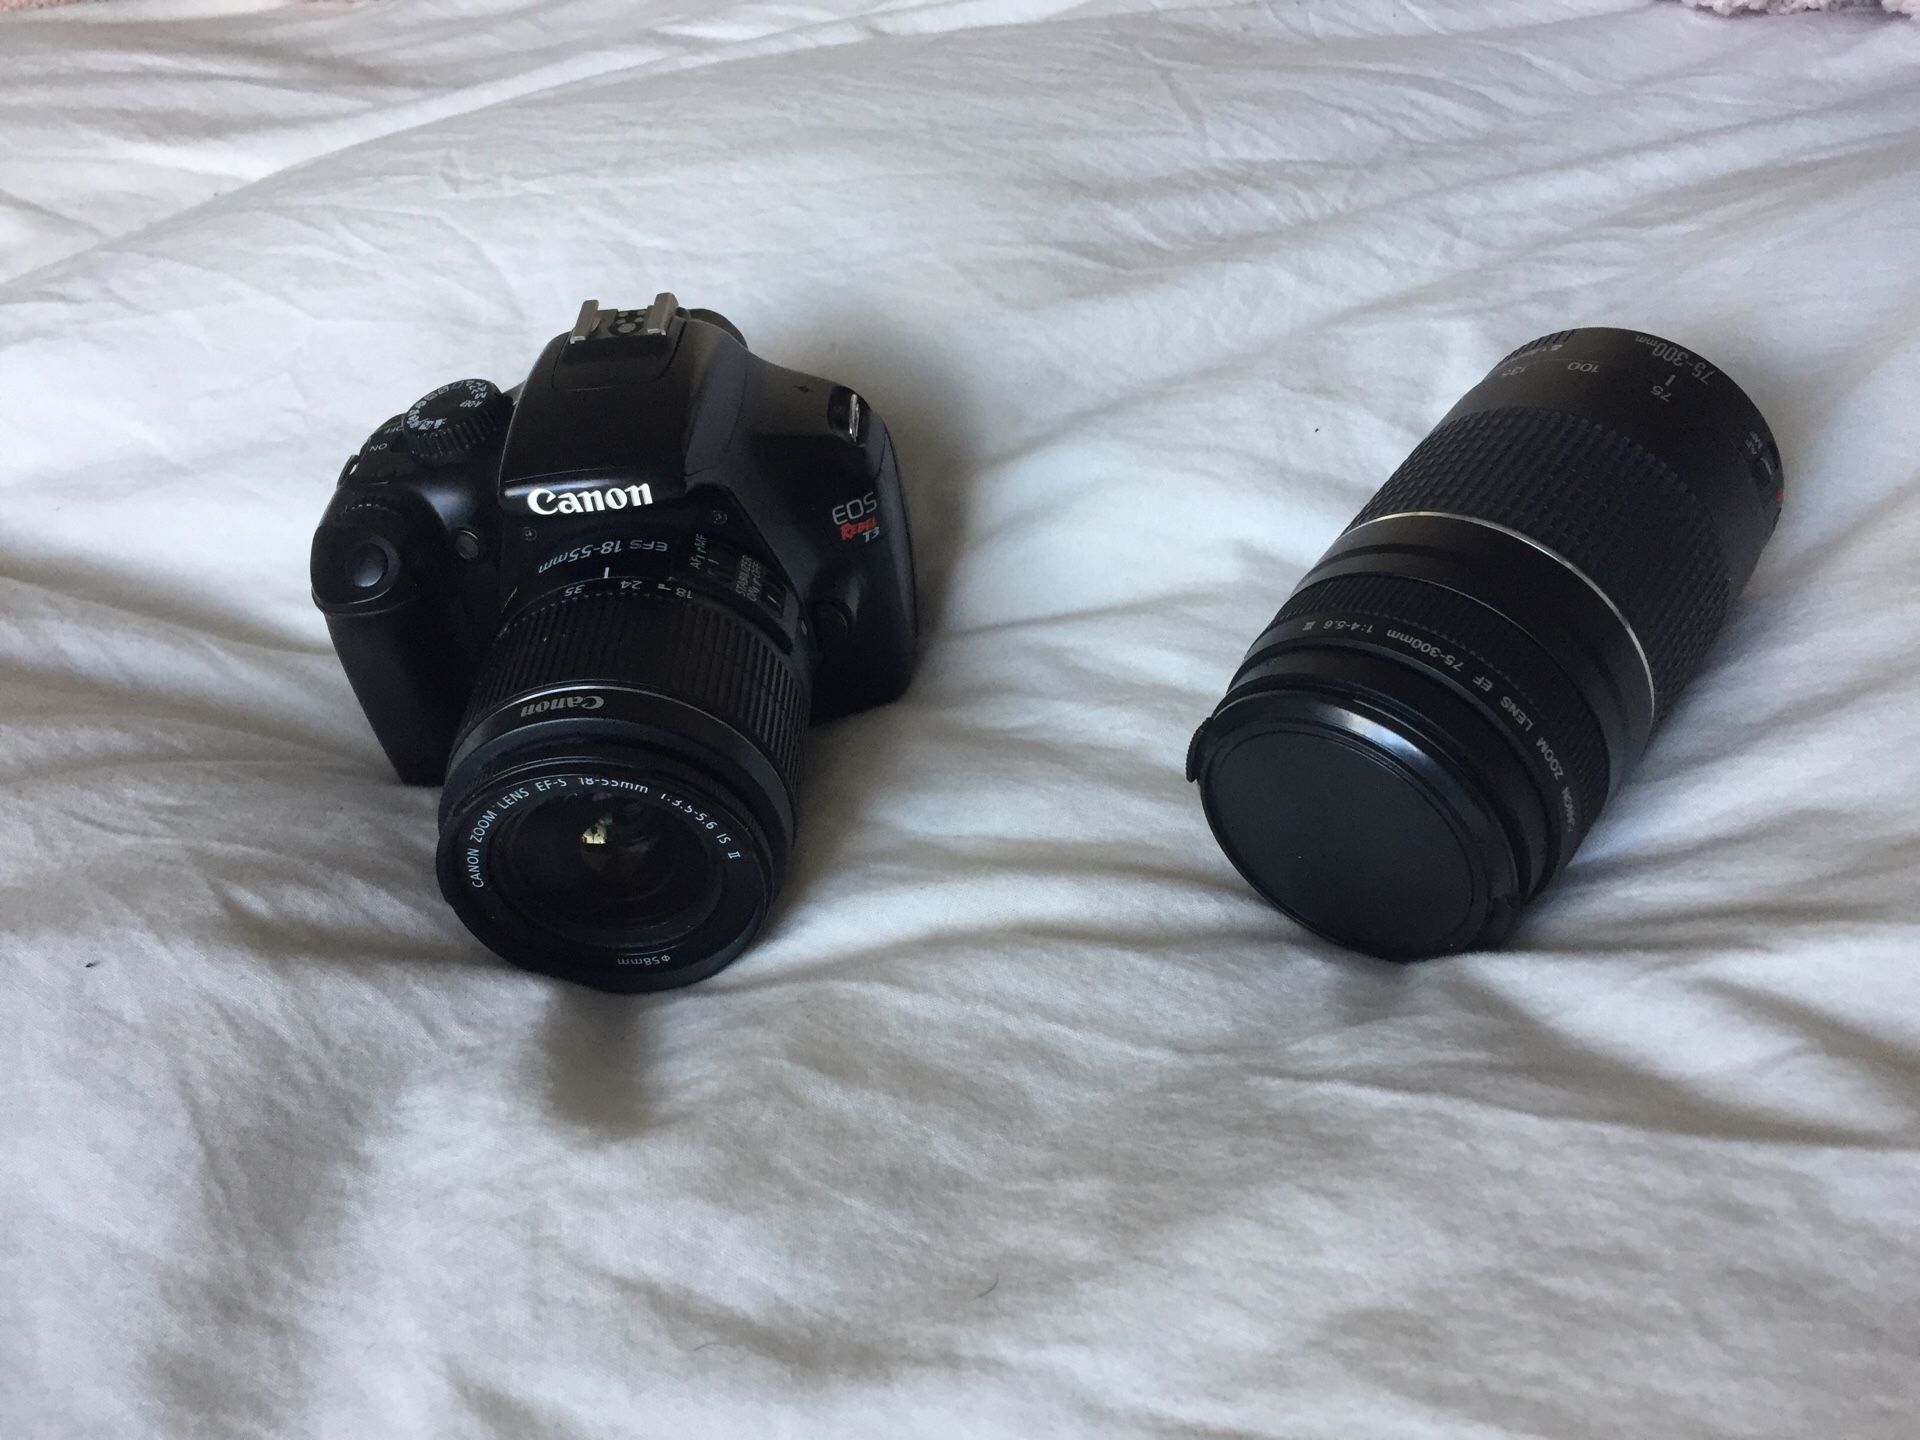 Canon Rebel T3-full kit